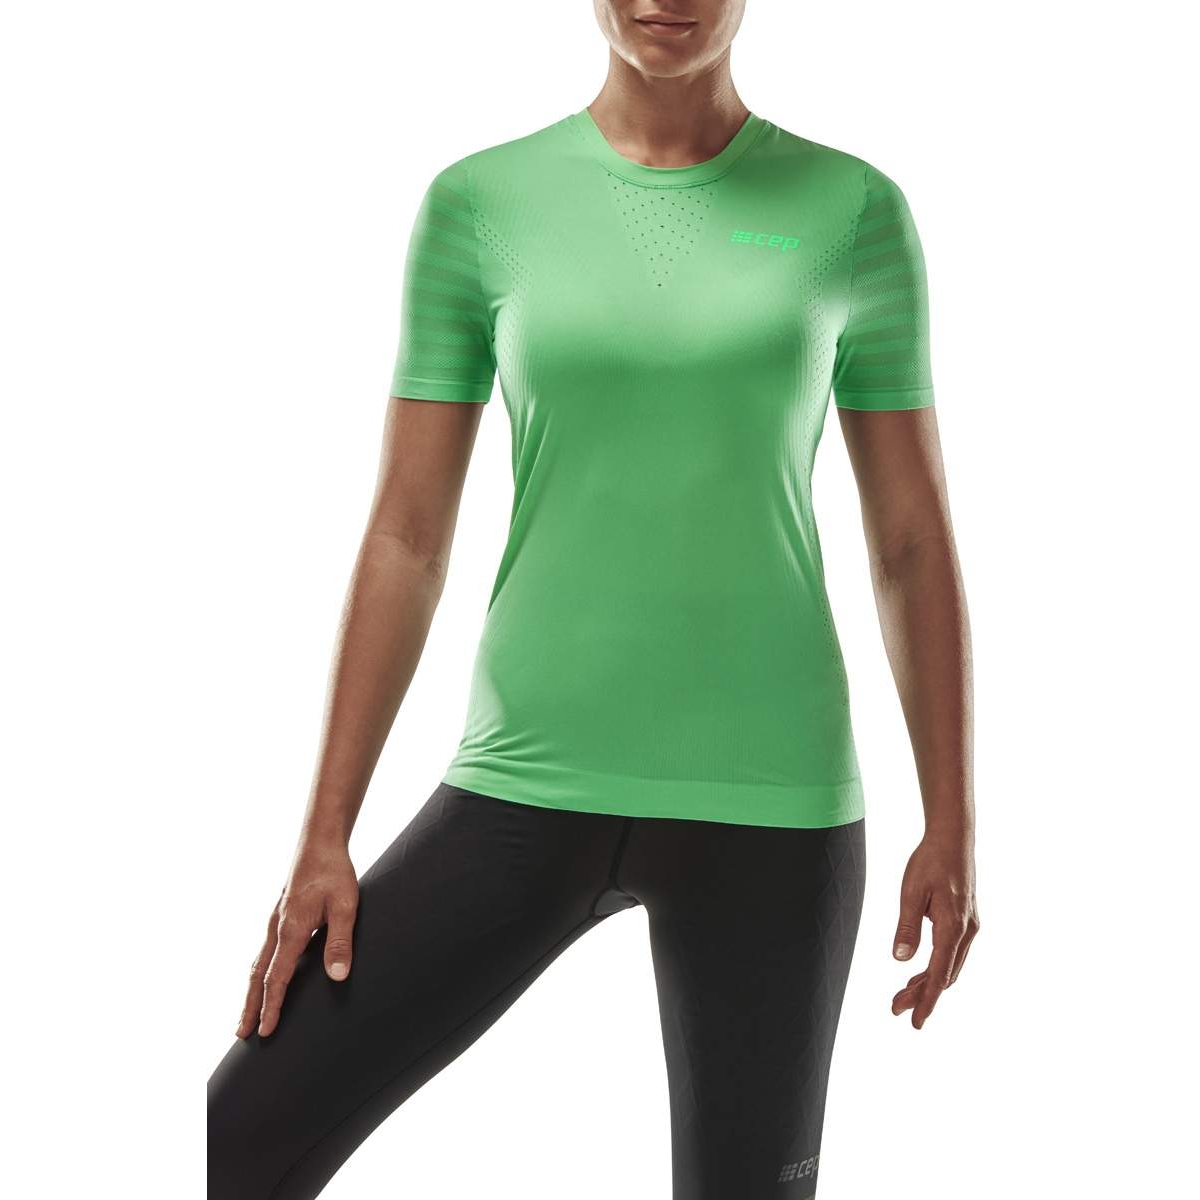 Produktbild von CEP Run Ultralight T-Shirt Damen - grün